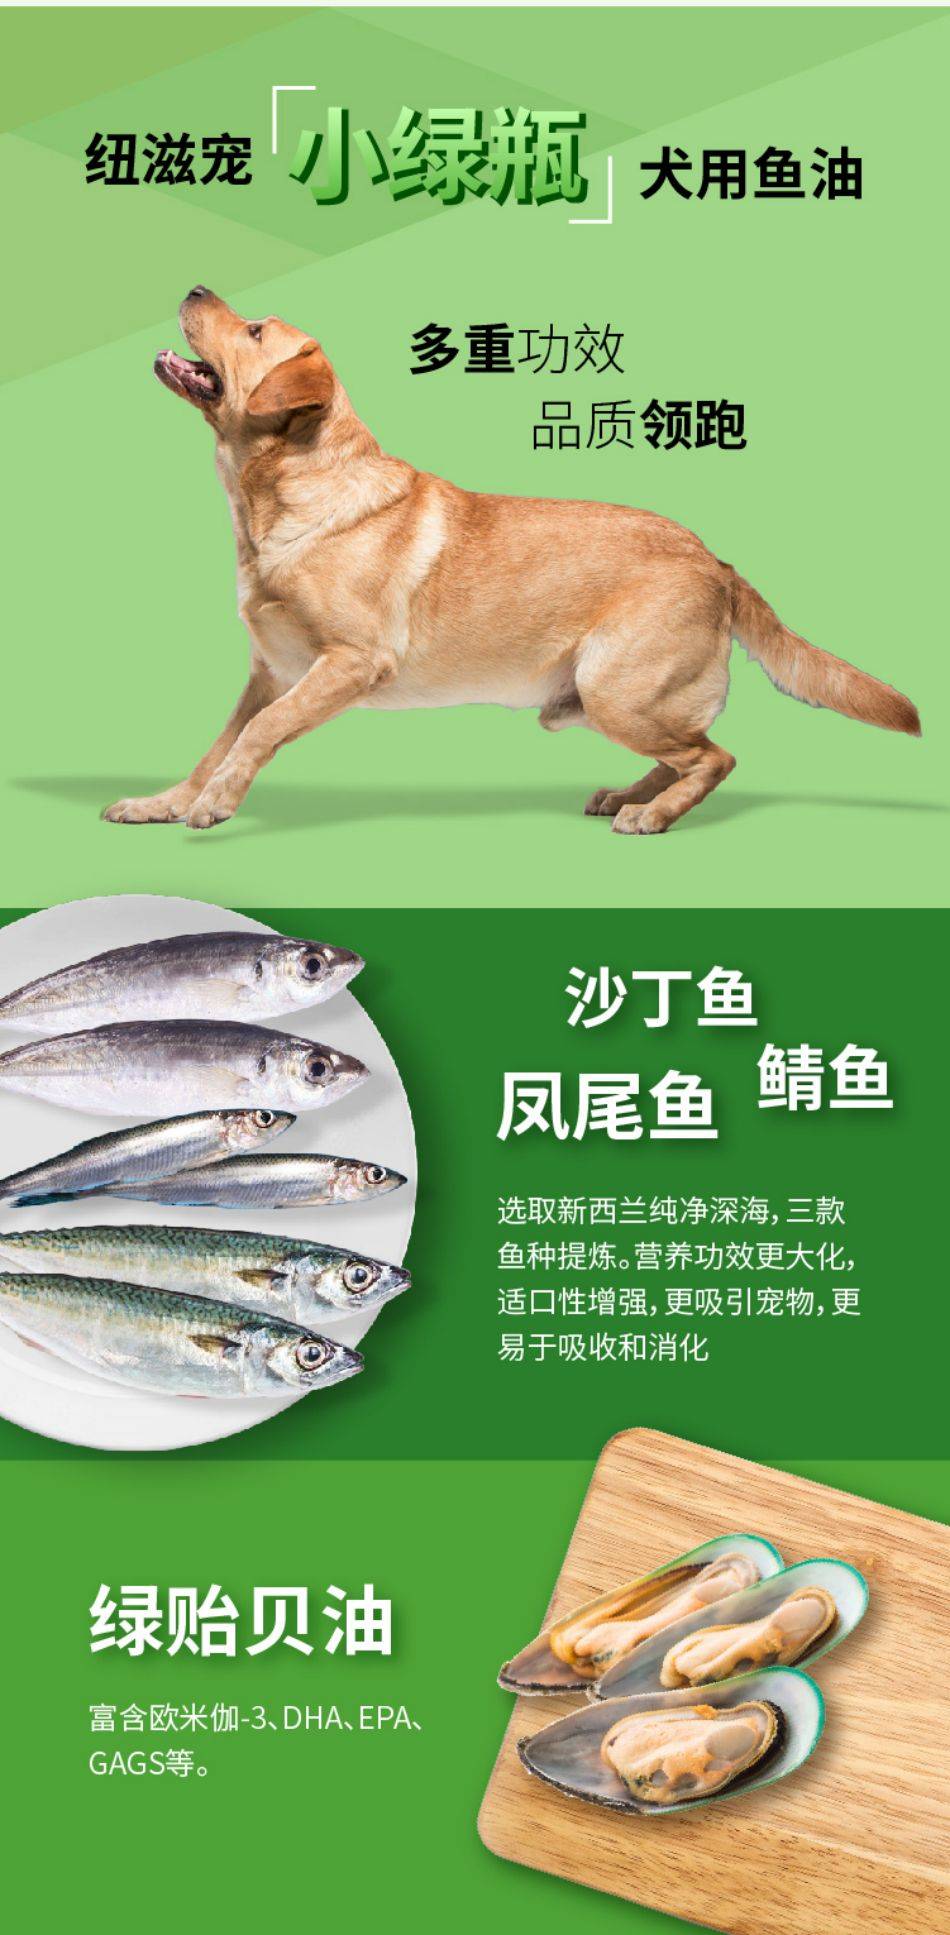 犬用强化鱼油_05